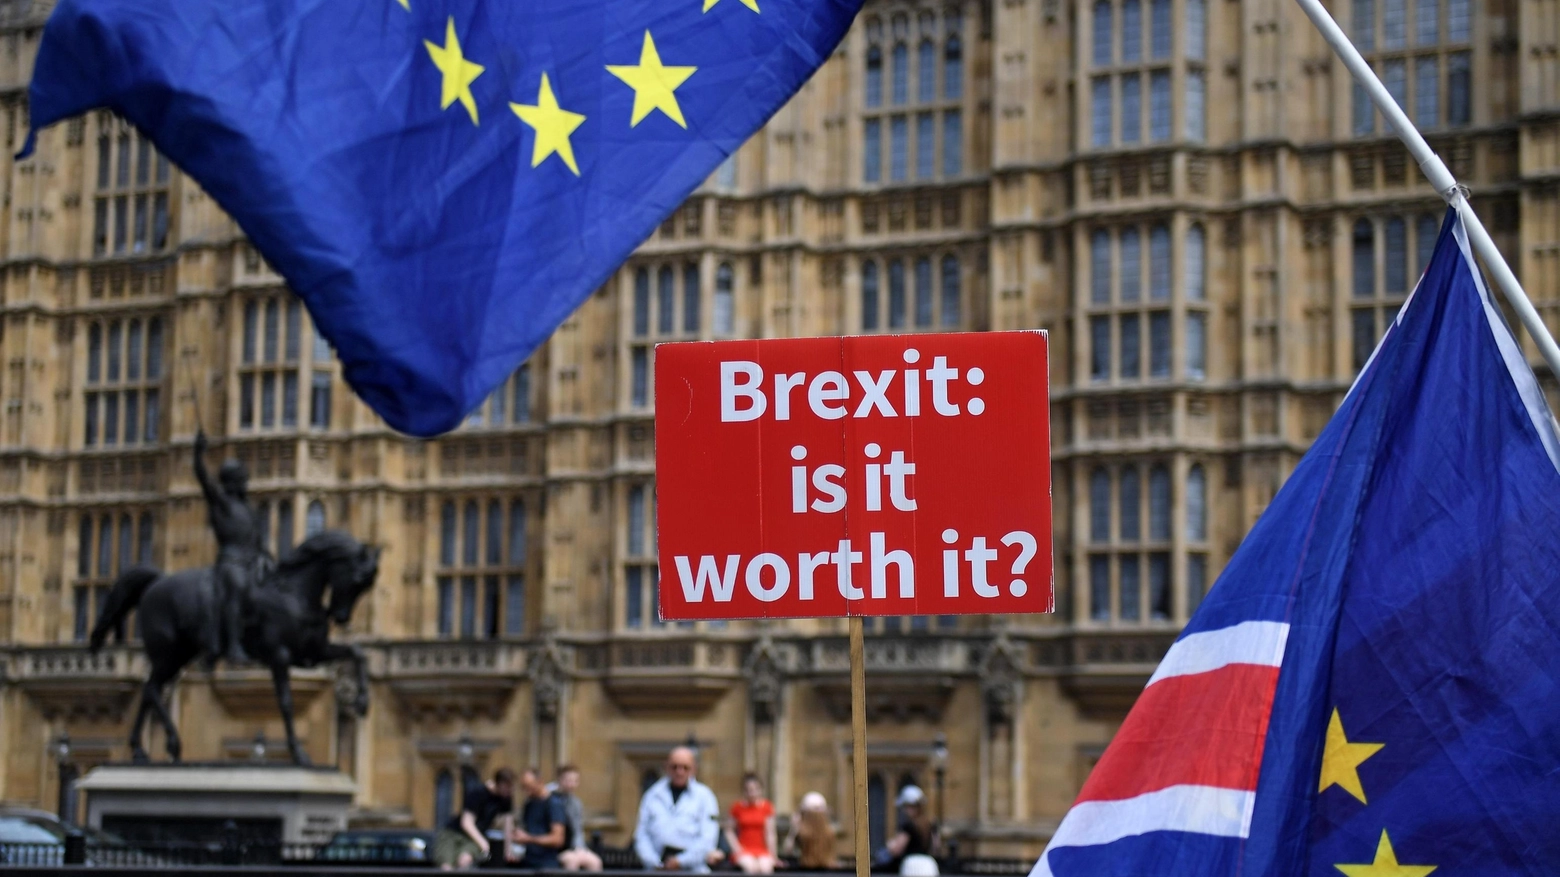 Sostenitori del "no-brexit" sventolano bandiere Ue di fronte al Parlamento a Londra (Ansa)